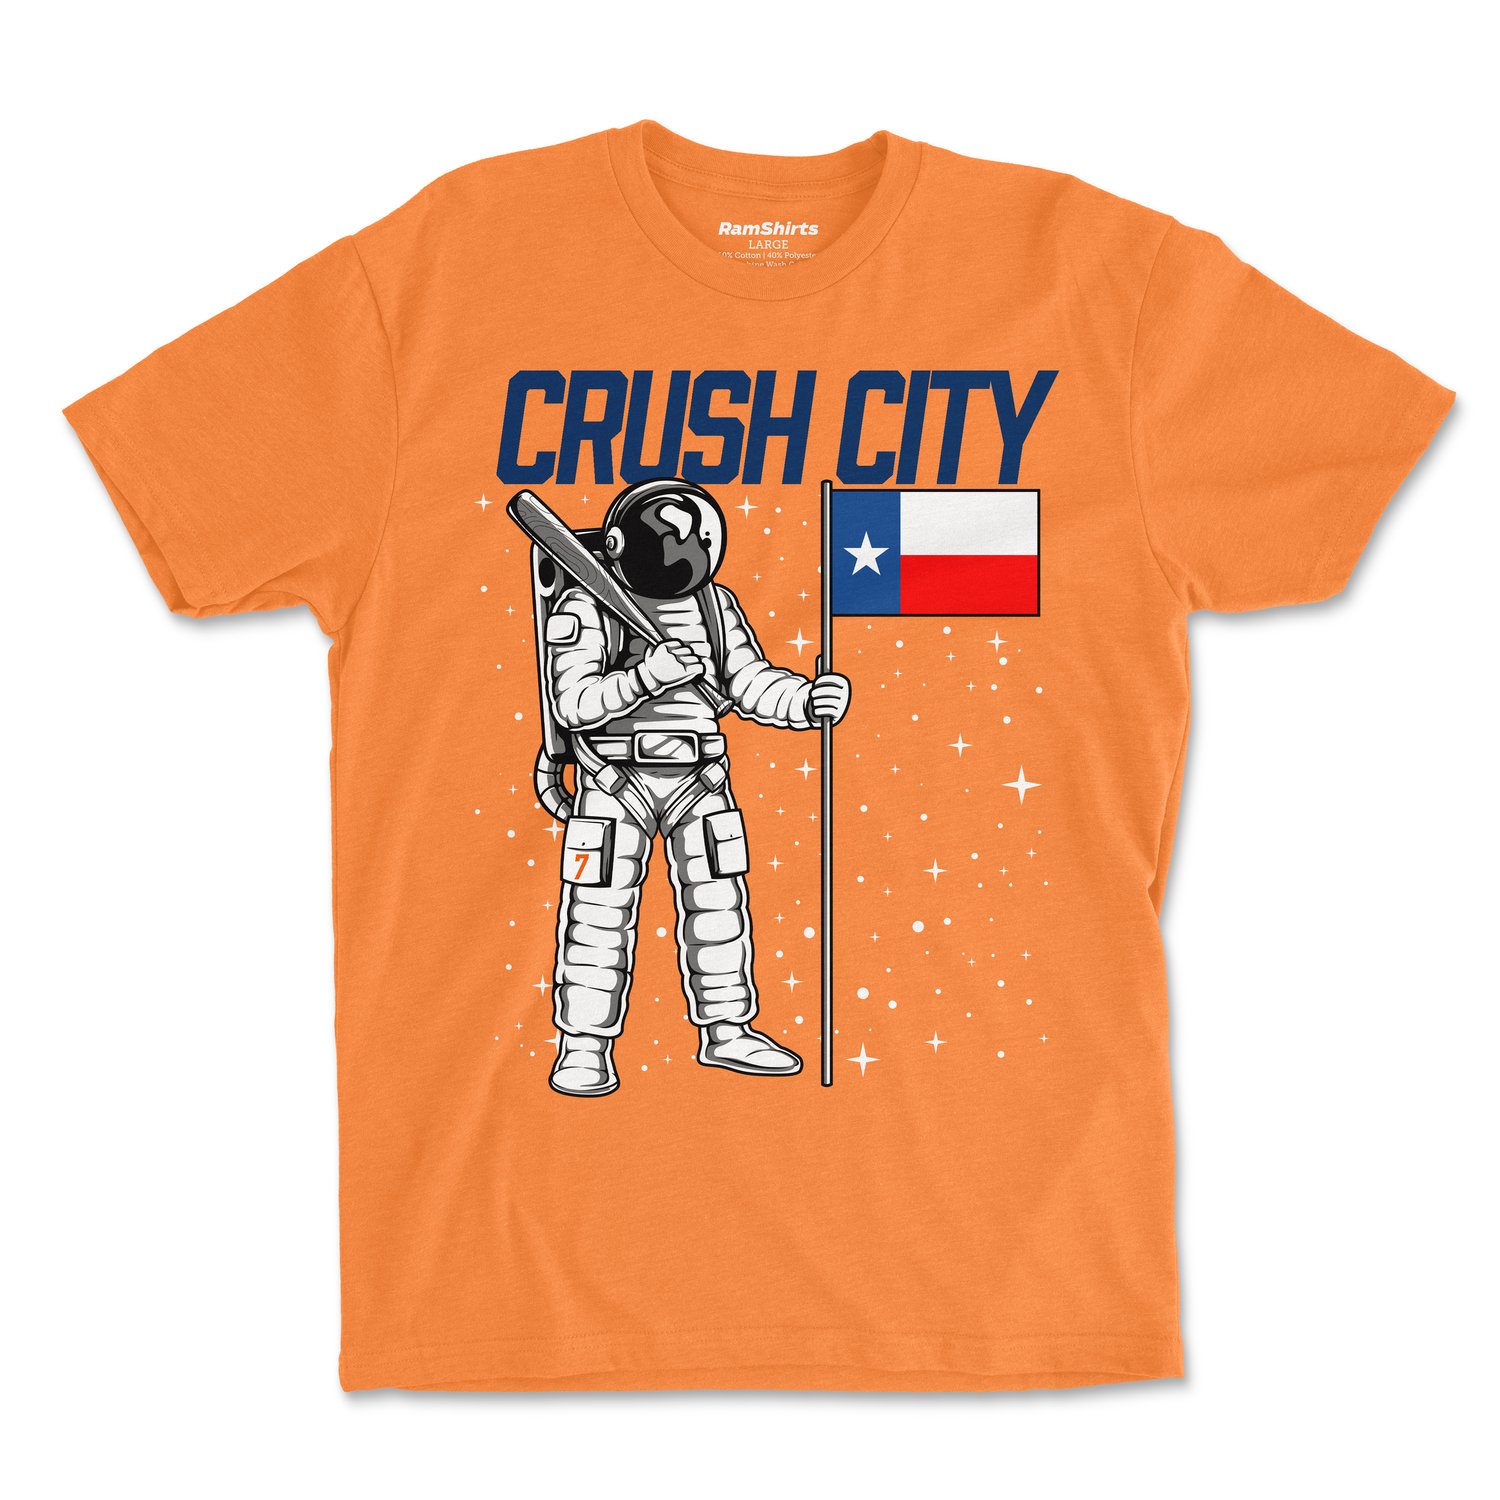 Houston Space City Astronaut' Men's T-Shirt